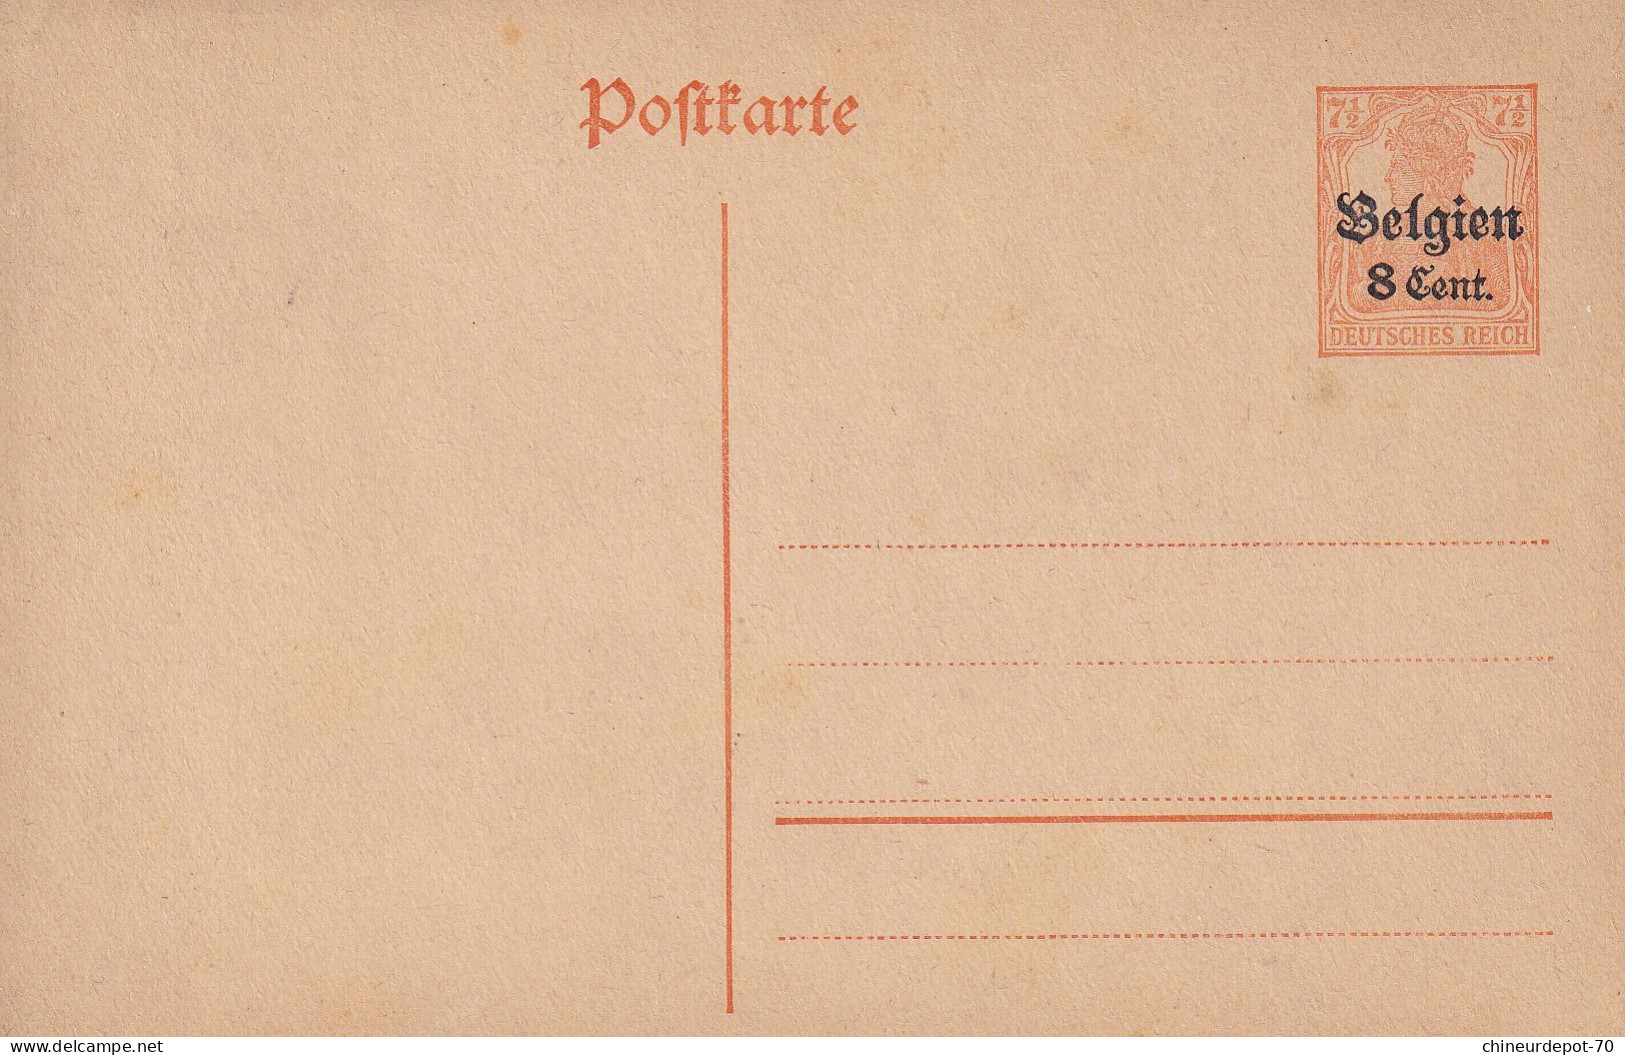 Pofttarte Occupation Deutches Reich Surcharge Belgien 8 Cent - Lettres & Documents